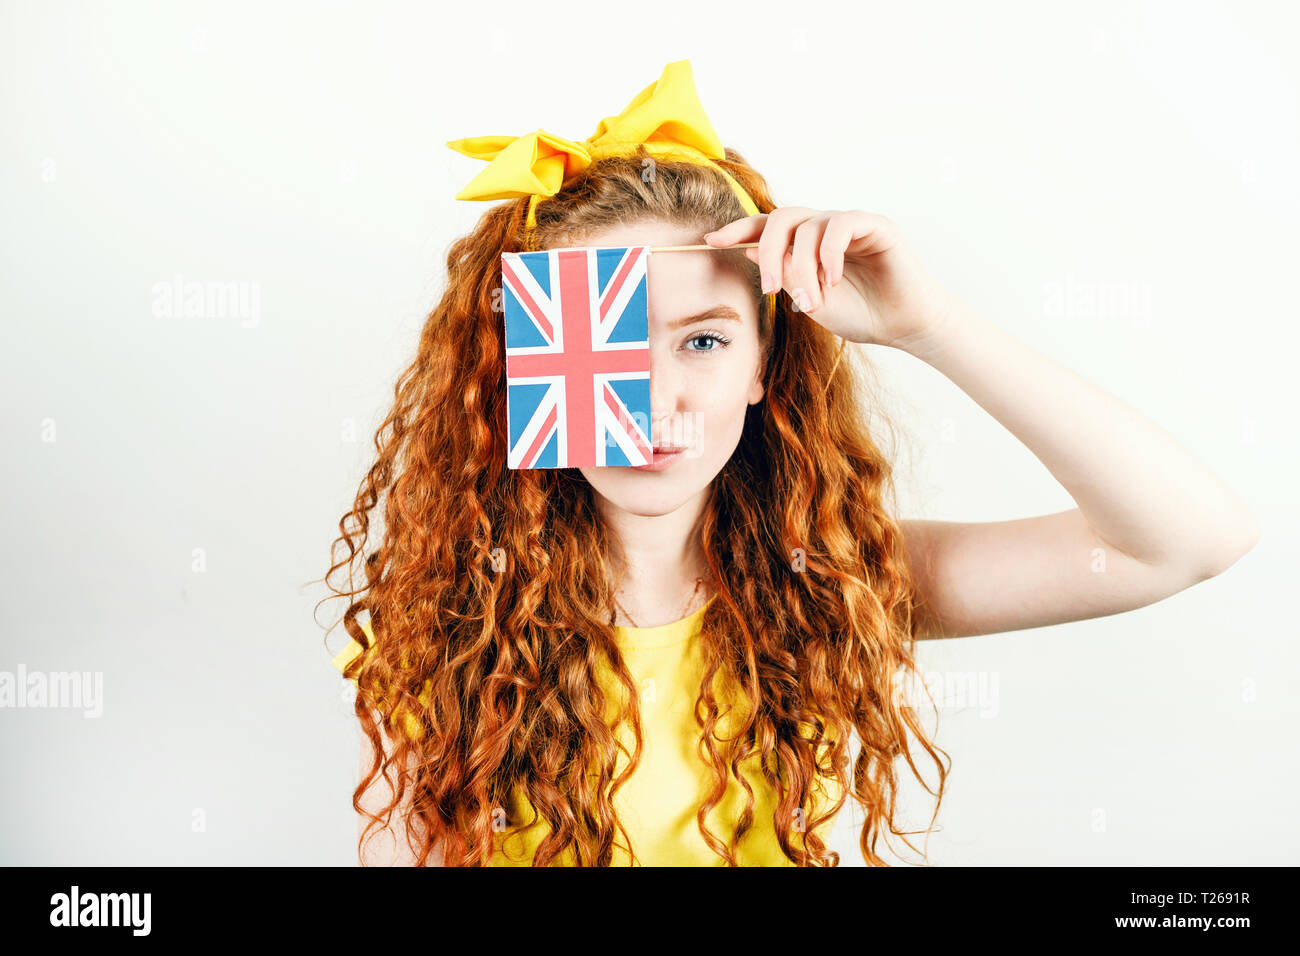 Fille rousse bouclée avec un arc jaune sur sa tête portant des T-shirt jaune dissimule son visage derrière le petit drapeau de l'Angleterre en étant debout sur le fond blanc. Banque D'Images